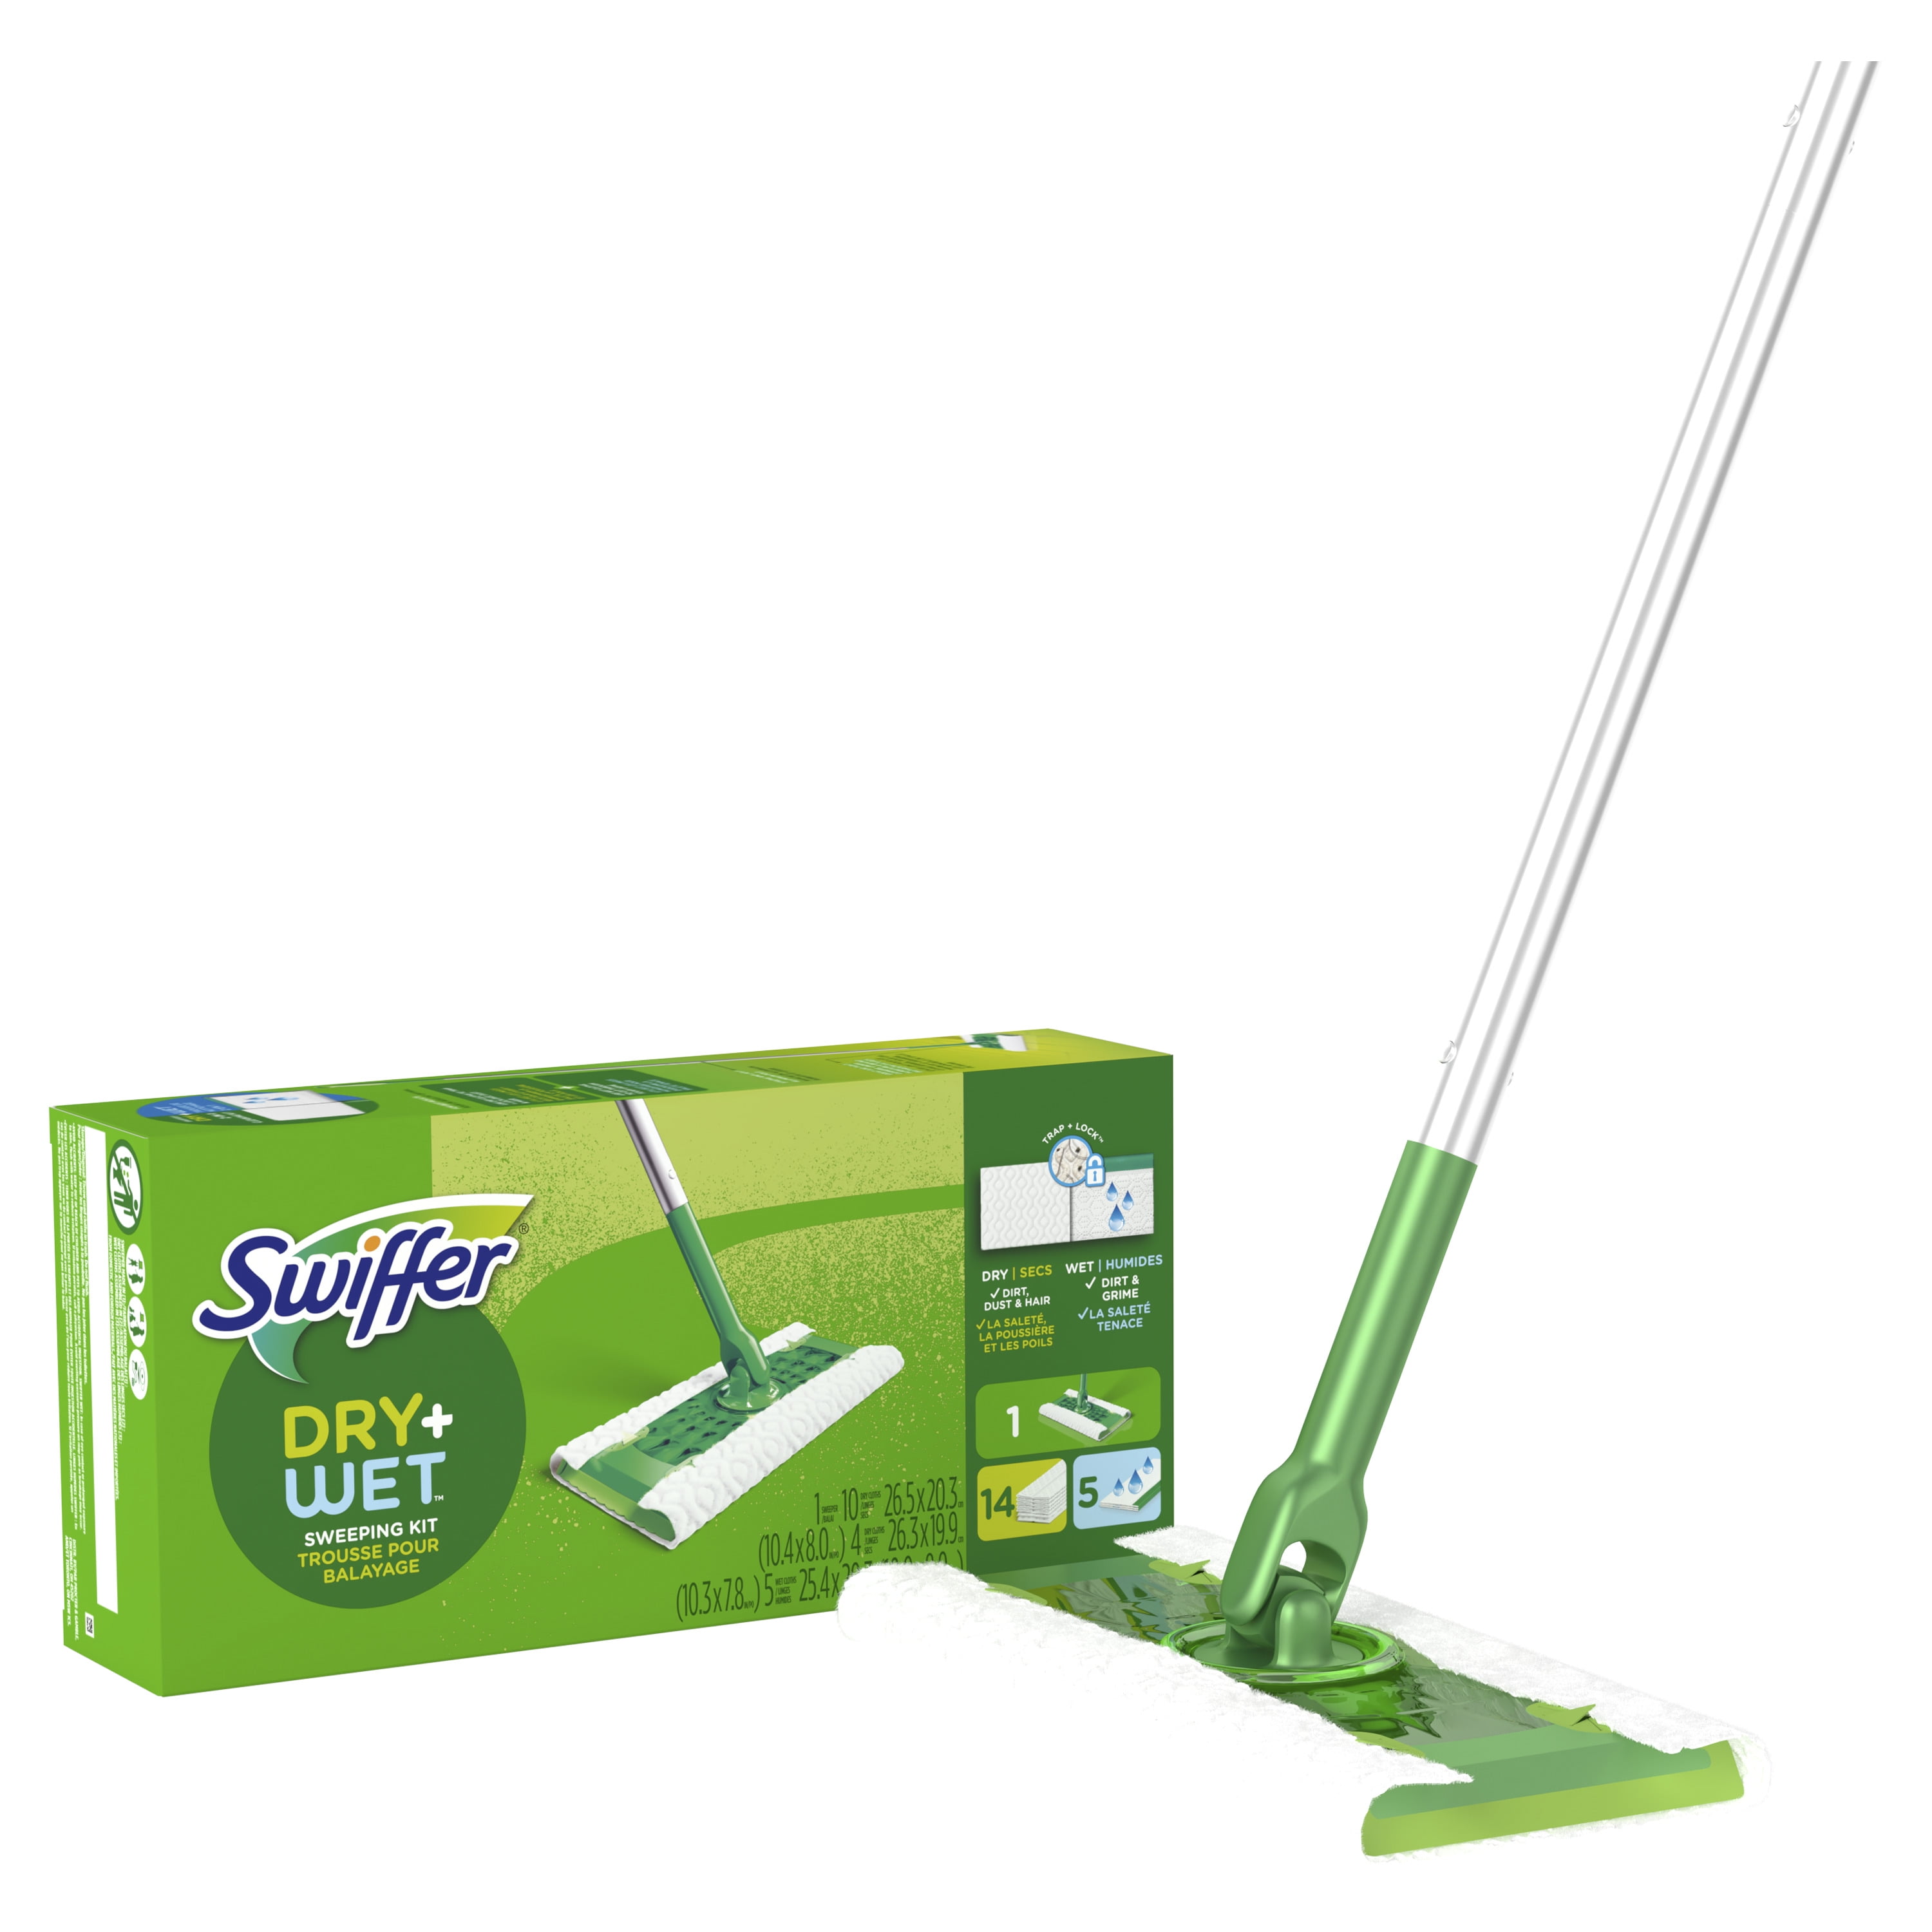 Swiffer Sweeper 2-en-1, limpiador de piso de superficie múltiple seco y  húmedo, barrido y mopping kit de inicio. Incluye 1 mop + 19 recargas